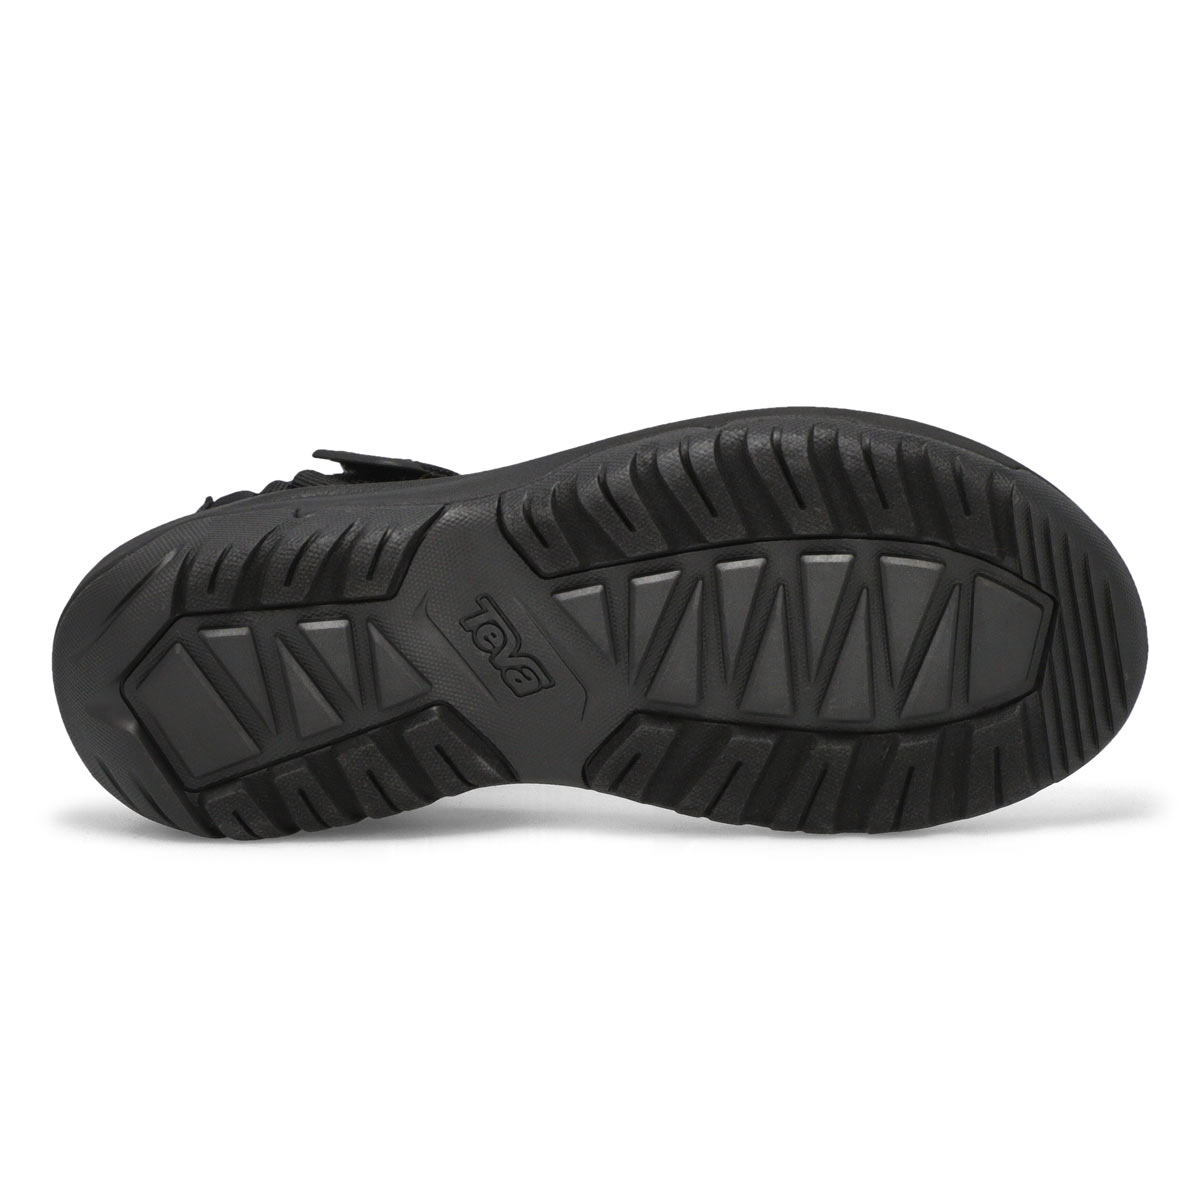 Men's Hurricane XL T2 Sport Sandal - Black